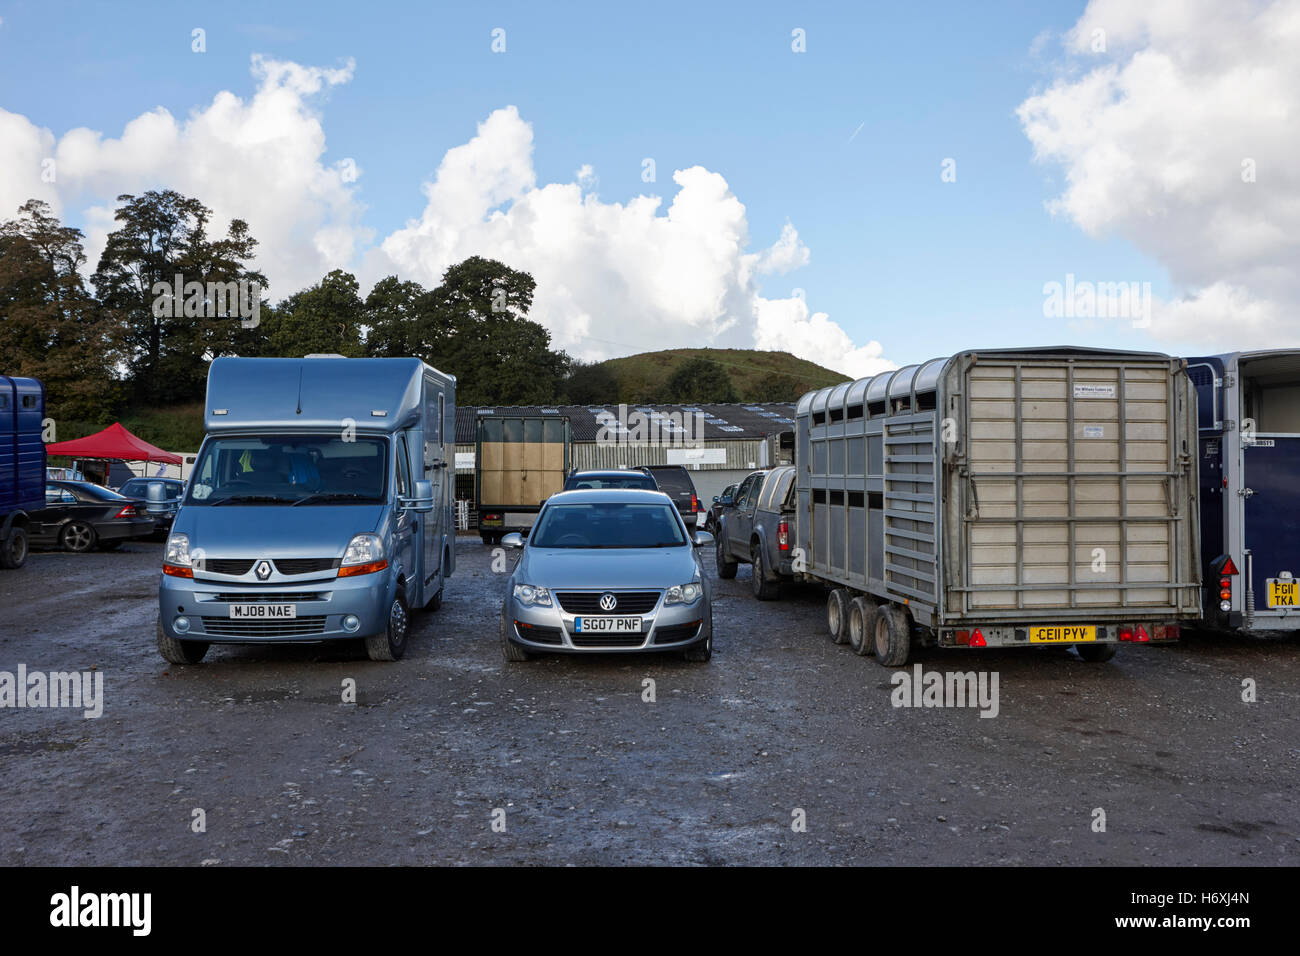 Les véhicules de transport de chevaux au marché de beeston england uk Banque D'Images